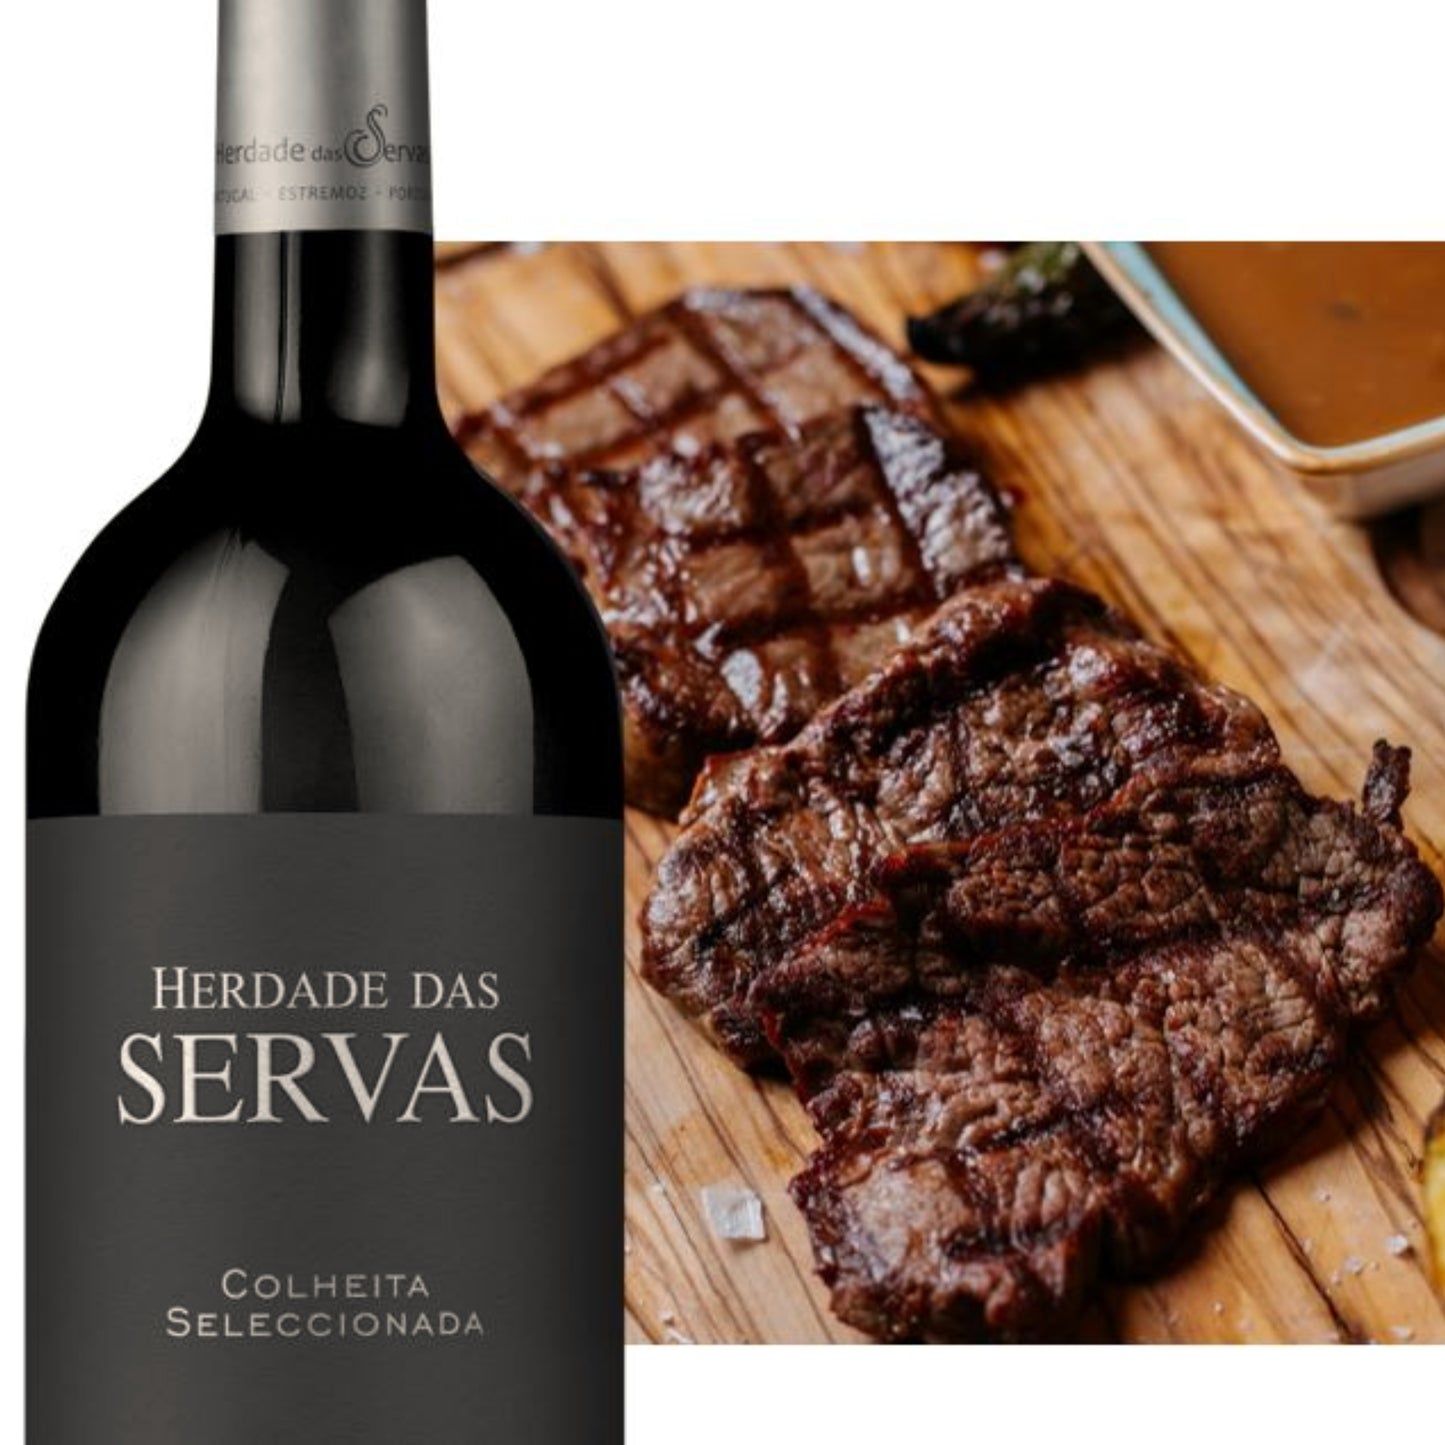 
                  
                    HERDADE DAS SERVAS COLHEITA SELECCIONADA: Rotwein vom Weingut Herdade das Servas aus der Region Estremoz – Alentejo/Portugal. Im Hintergrund ist ein Holzbrett zu sehen auf dem gegrillte Steaks liegen.
                  
                